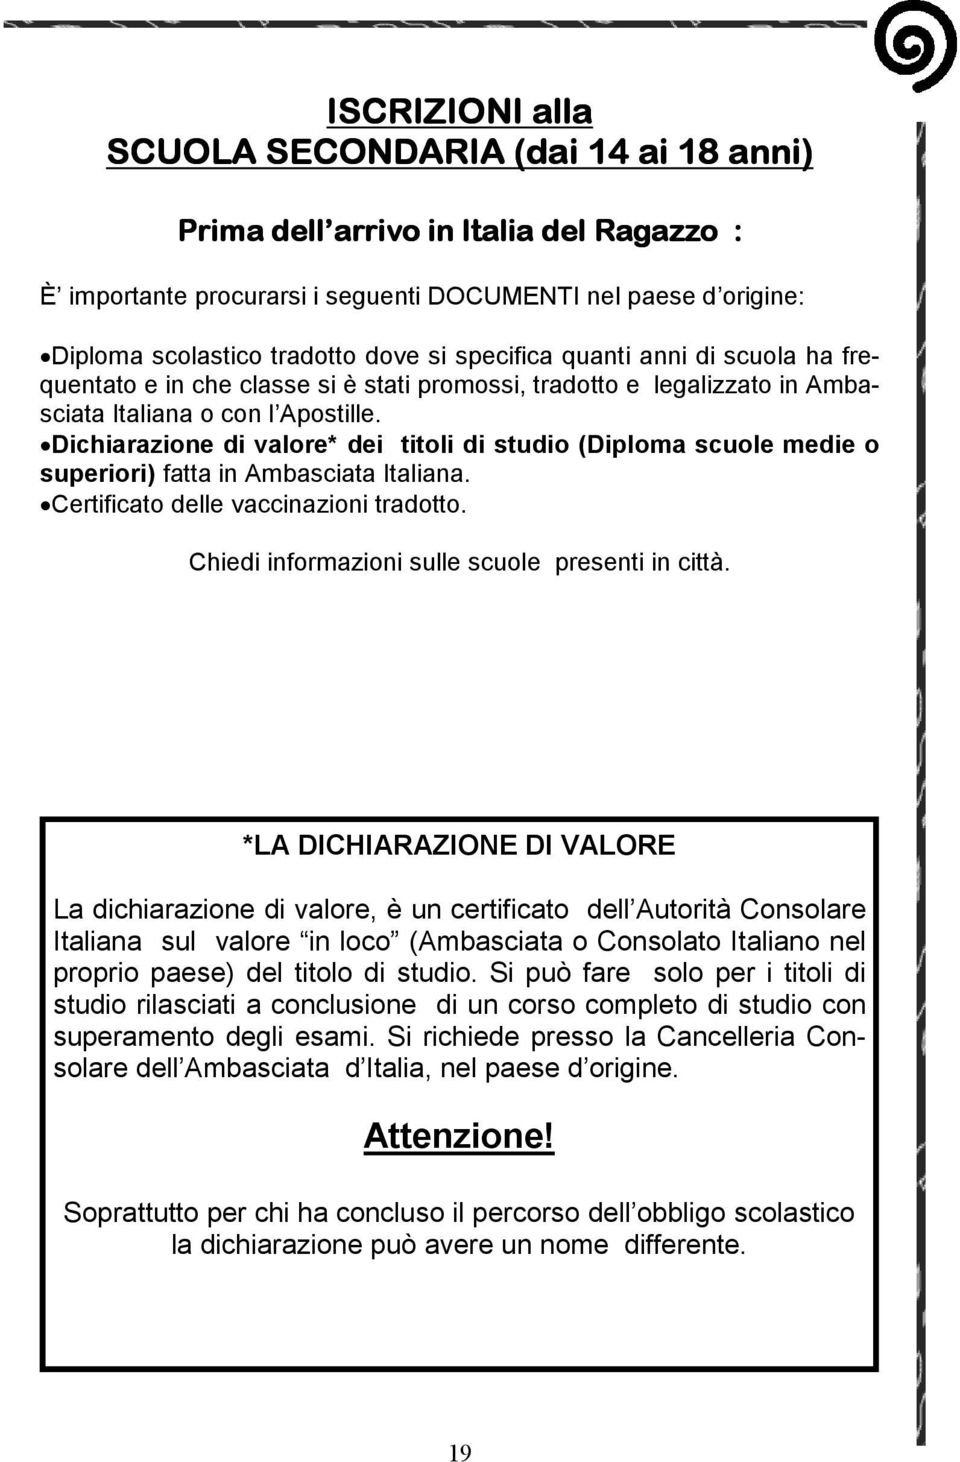 Dichiarazione di valore* dei titoli di studio (Diploma scuole medie o superiori) fatta in Ambasciata Italiana. Certificato delle vaccinazioni tradotto.